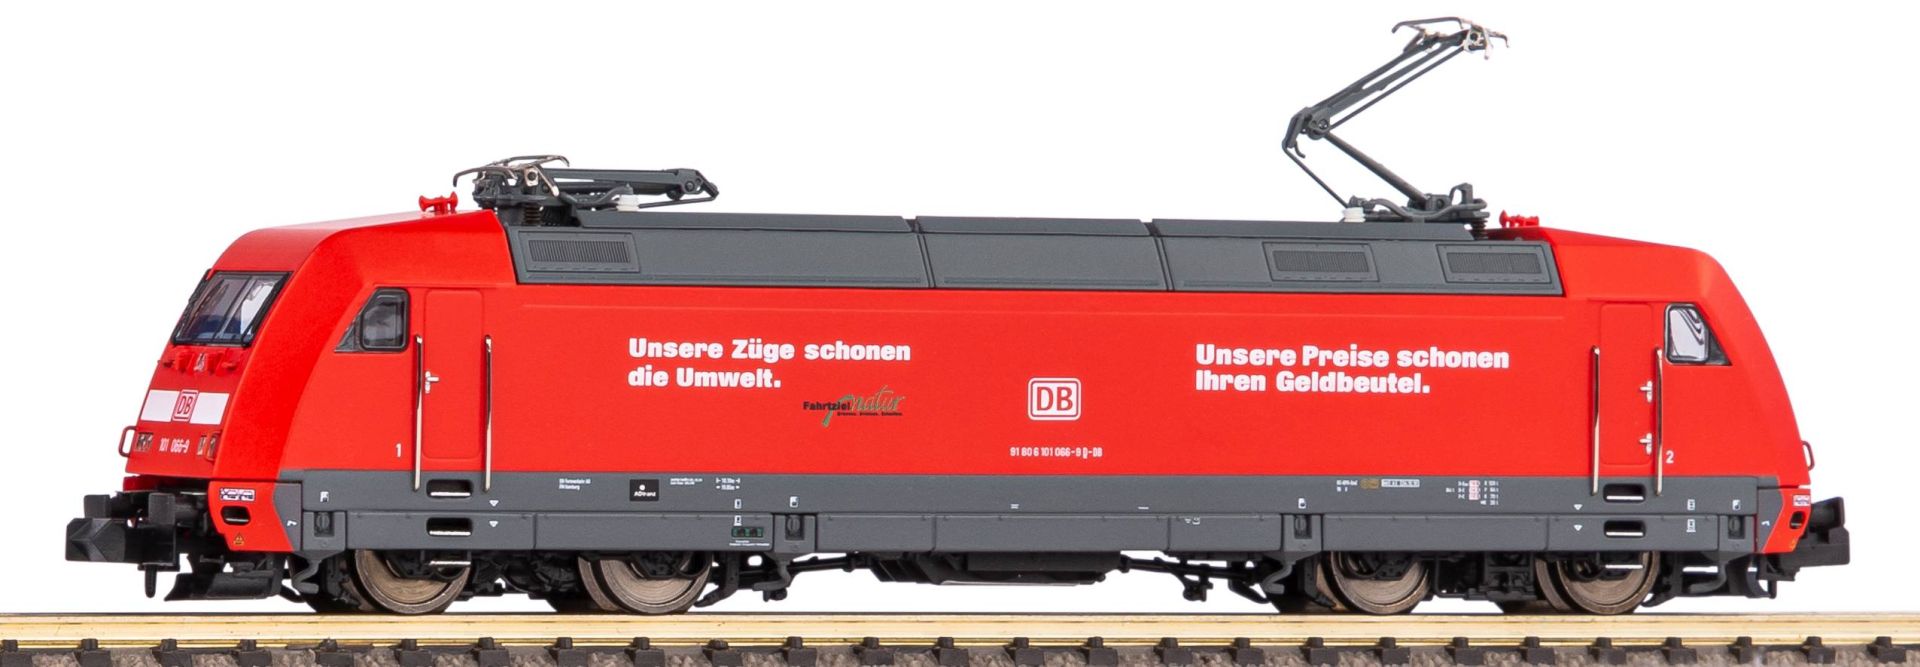 Piko 40564 - E-Lok BR 101, DBAG, Ep.VI 'Unsere Preise'